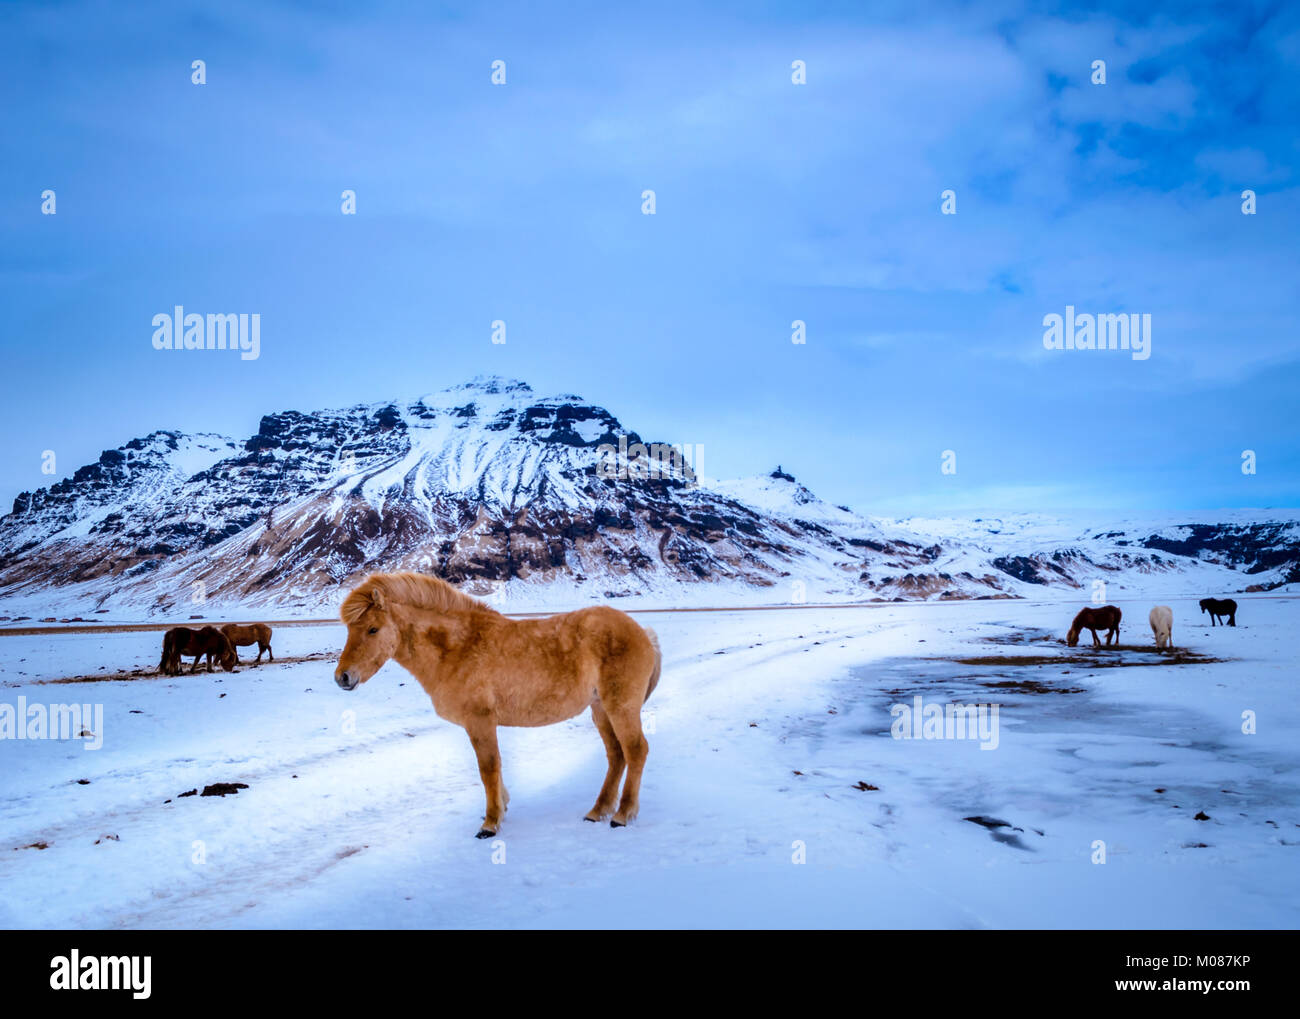 Islandpferde, ziemlich sich selbst und wunderschönen Landschaften. Einer der vielen Gründe, warum jeder verliebt sich in Island Stockfoto